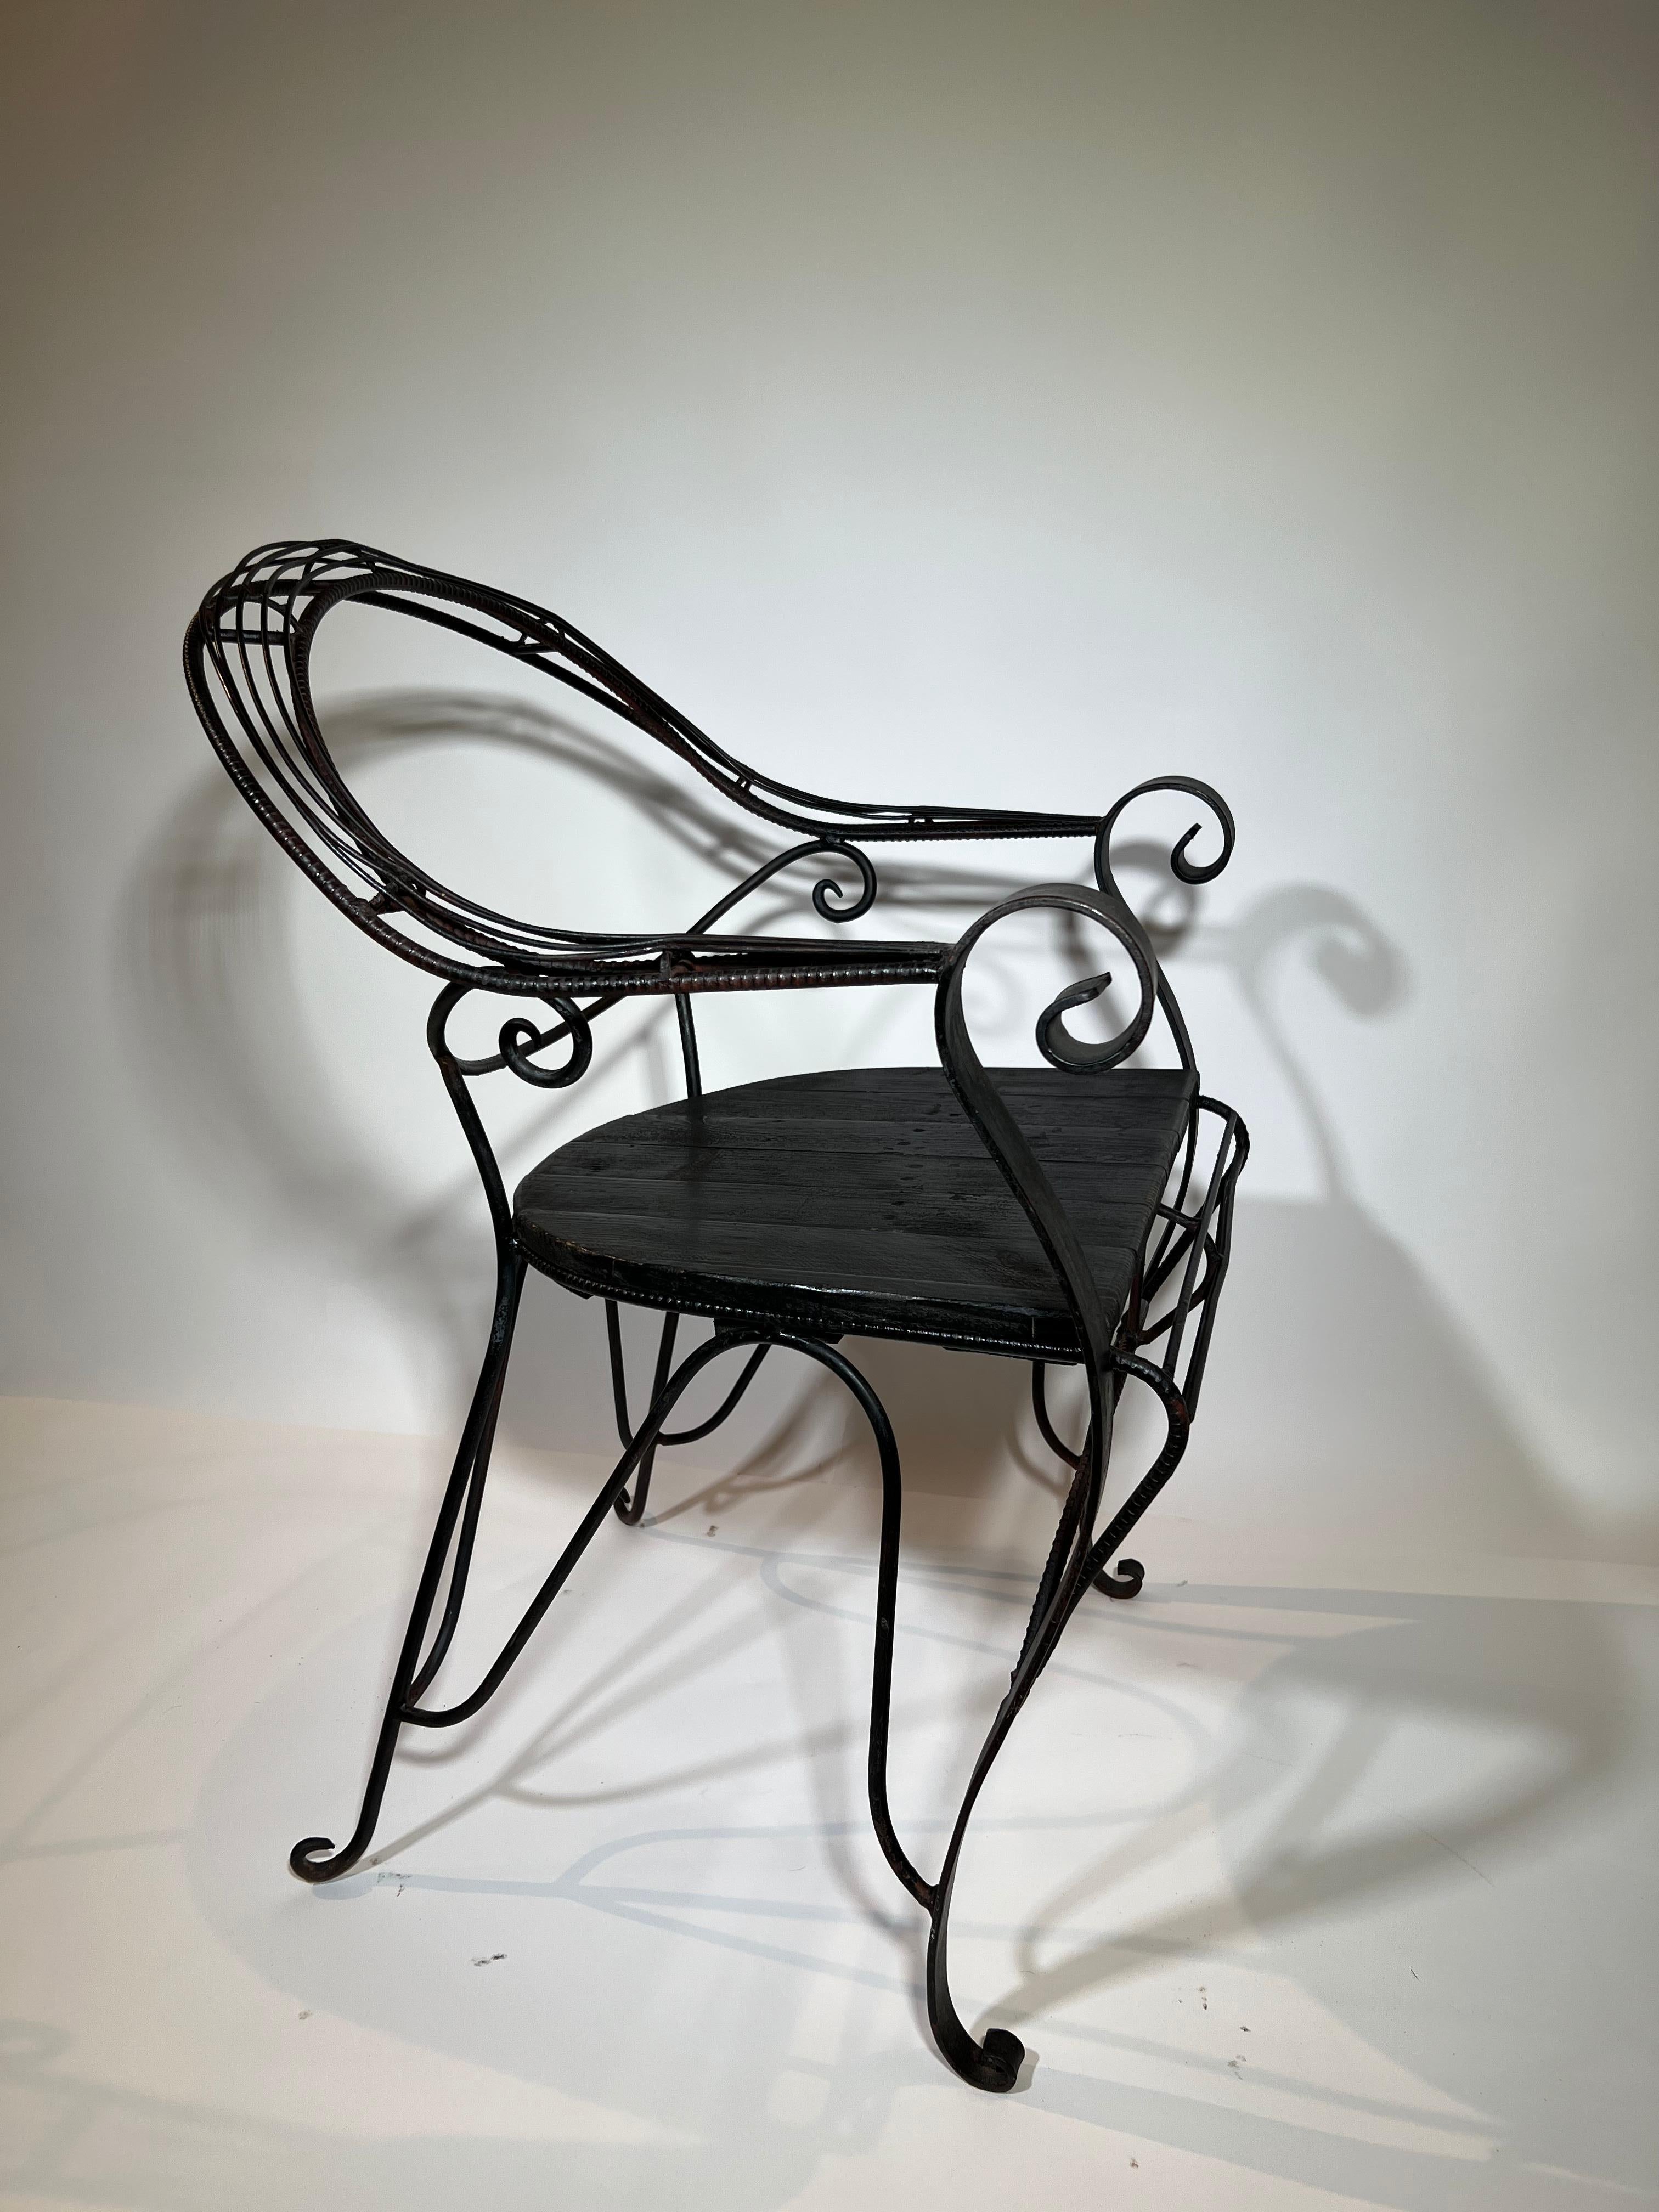 Charmante chaise de jardin du sud de la France, datant du début du 20e siècle. Construit en fer peint bien patiné et avec un siège en bois. Une superbe pièce d'accent pour tout jardin ou intérieur.